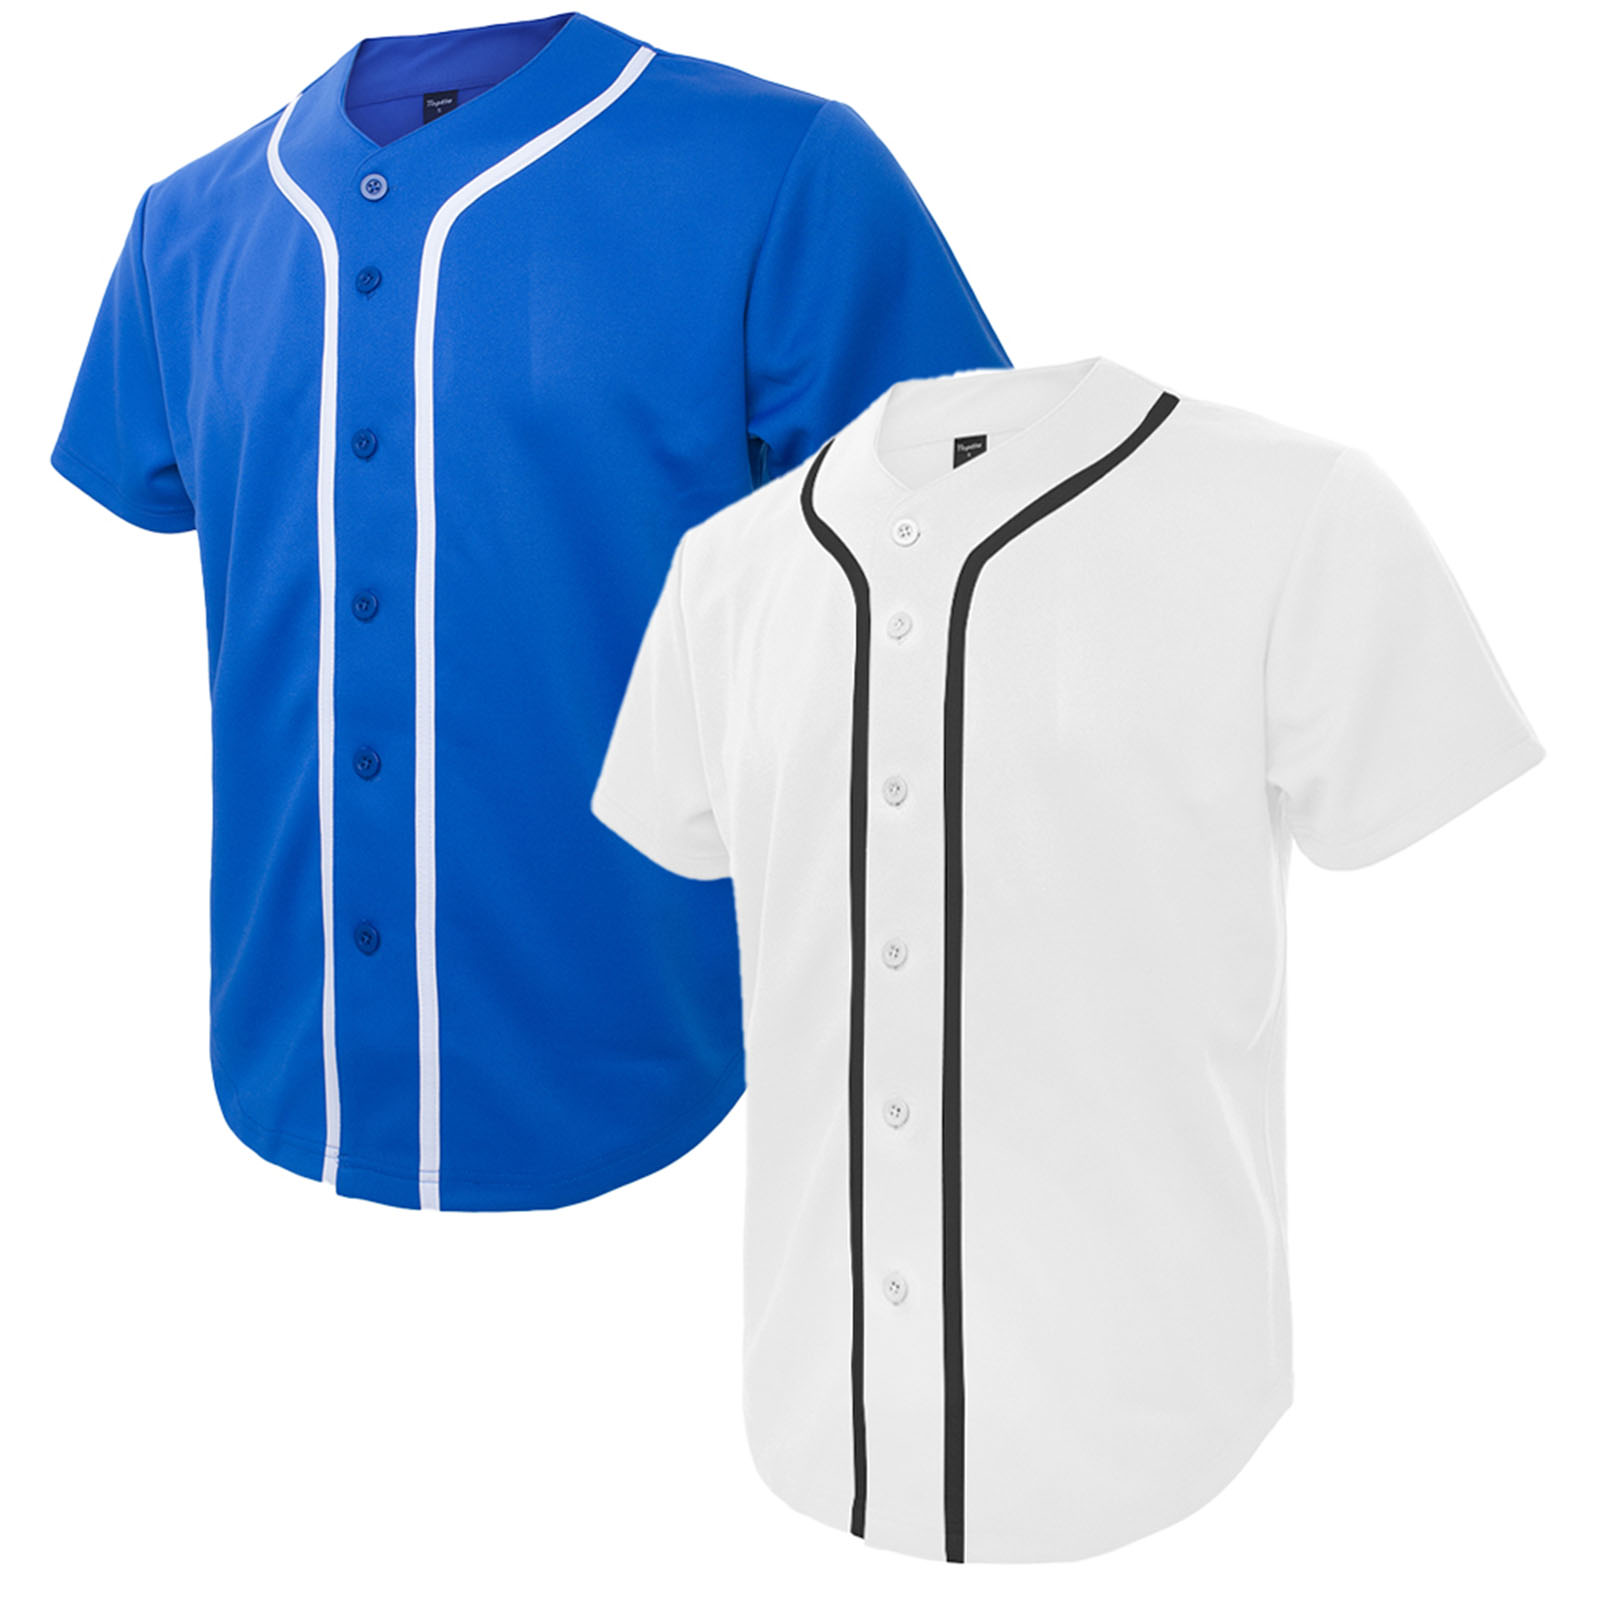 Wholesale Blank Plain Hip Hop Hipster Baseball Jersey Button Down Shirts  Sports Uniforms Men Women Jersey From m.